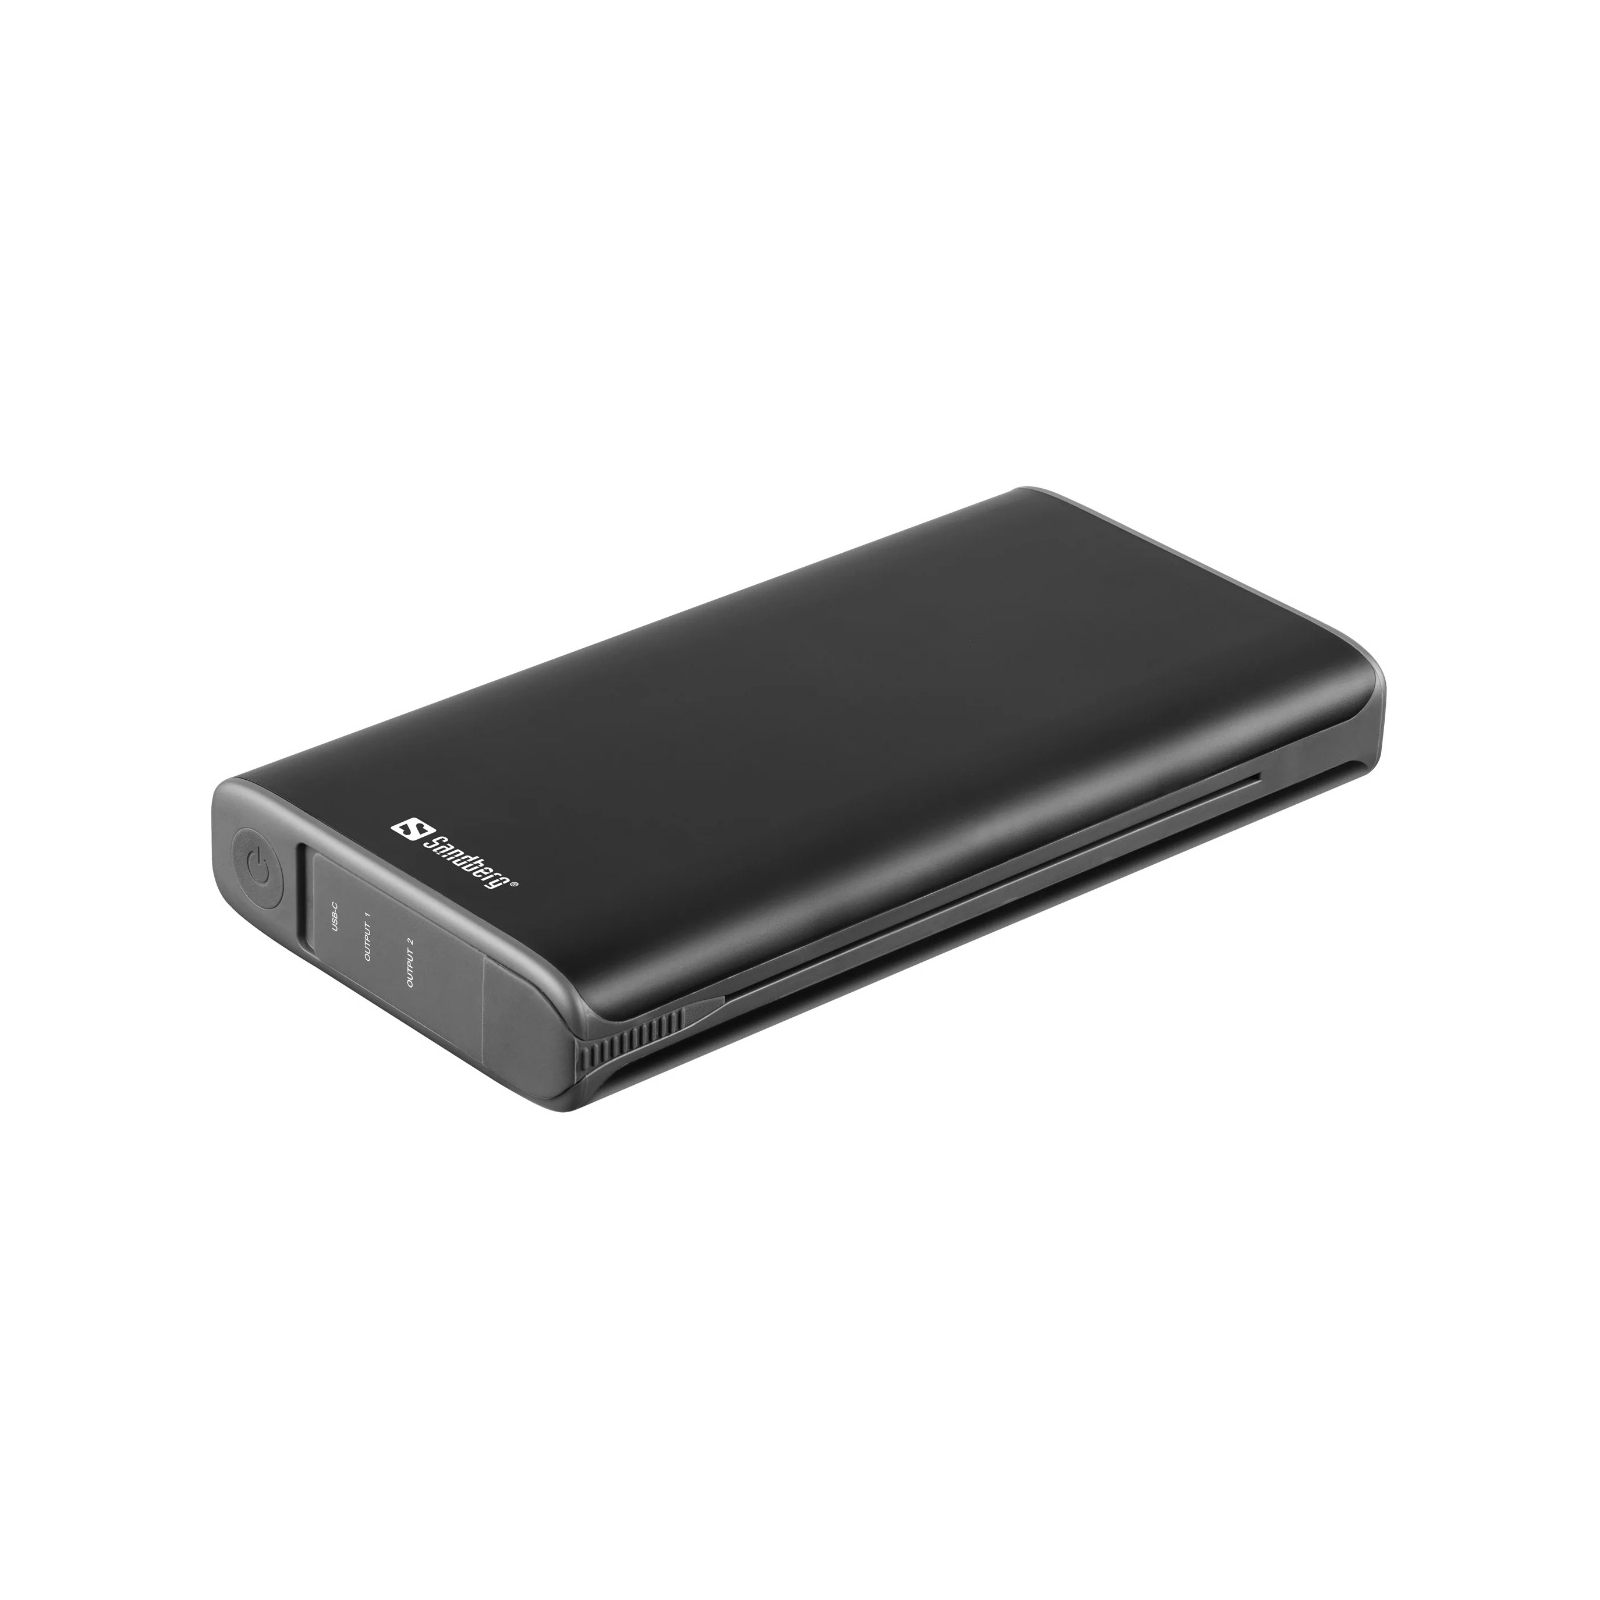 Батарея універсальна Sandberg 25000mAh, Solar 4-Panel/8W, USB-C input/output(18W max), USB-A*2/3A(Max) (420-56) зображення 3